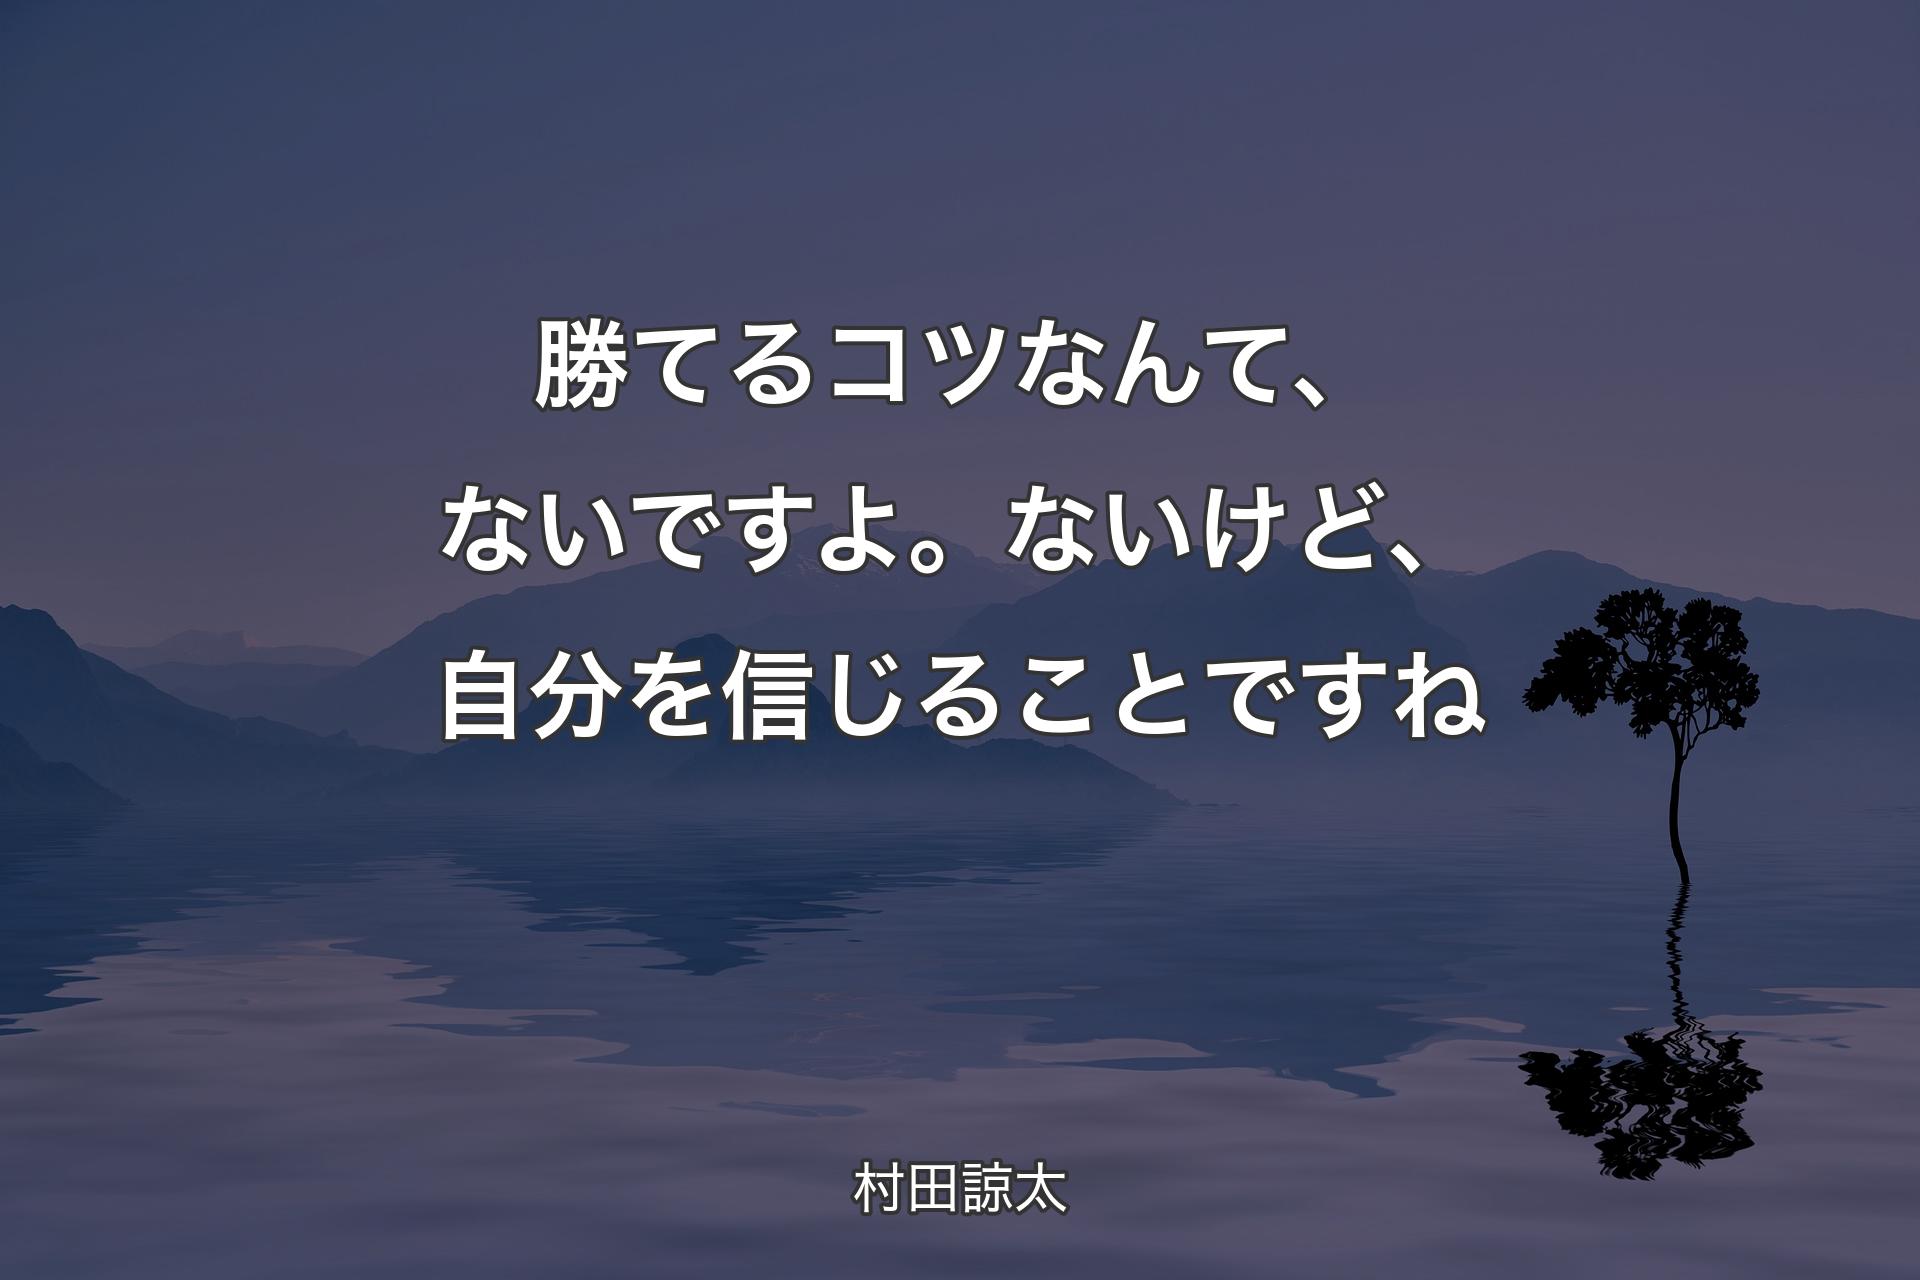 【背景4】勝てるコツなんて、ないですよ。ないけど、自分を信じることですね - 村田諒太